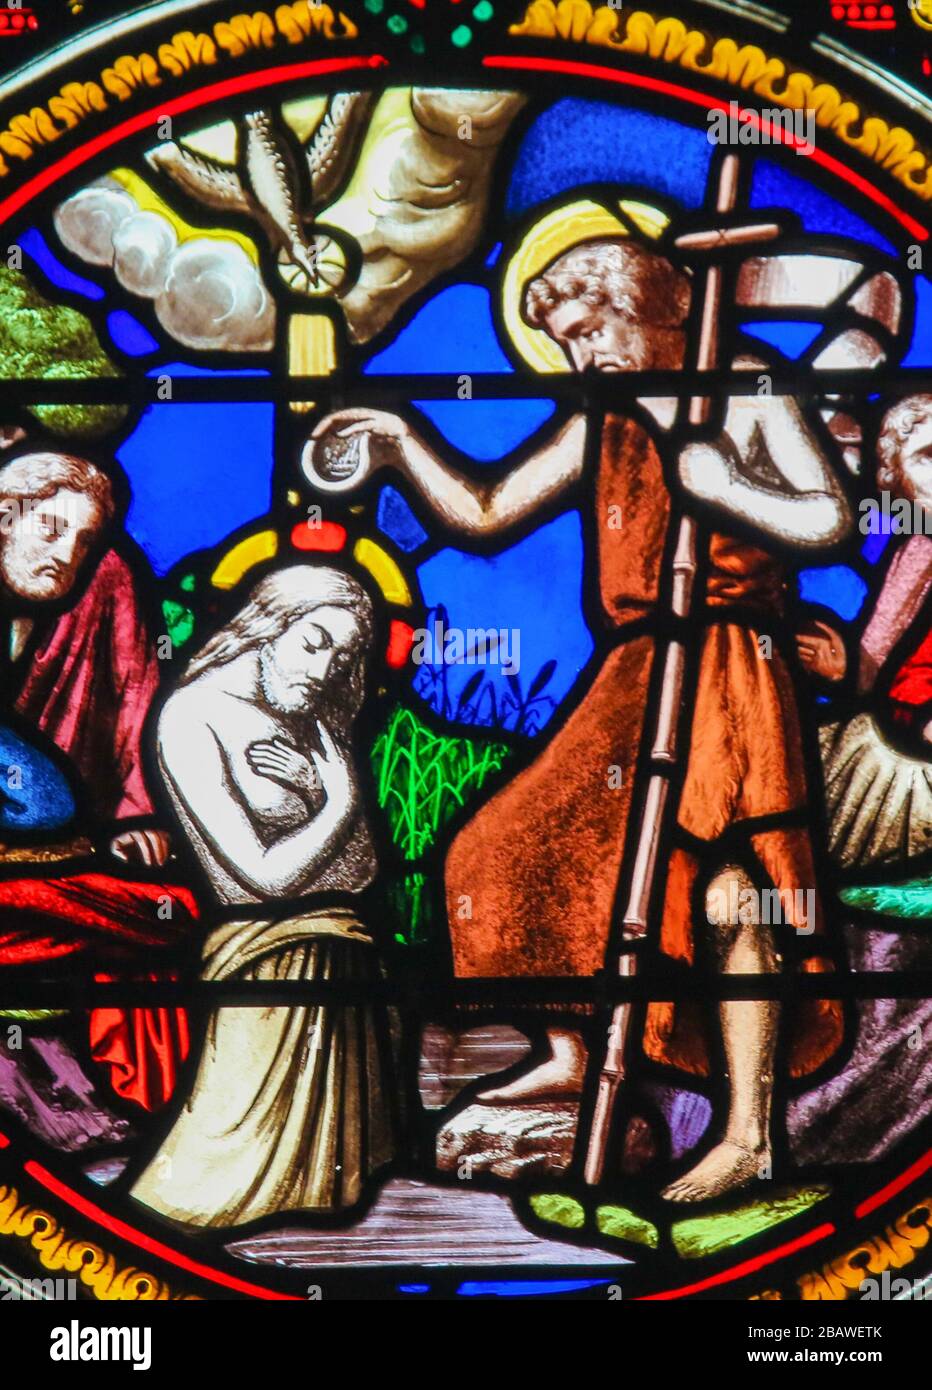 Saint-adresse, France - 15 août 2019 : vitrail dans la Chapelle de notre-Dame-des-flots (1857) à Sainte adresse, le Havre, France, représentant le Banque D'Images